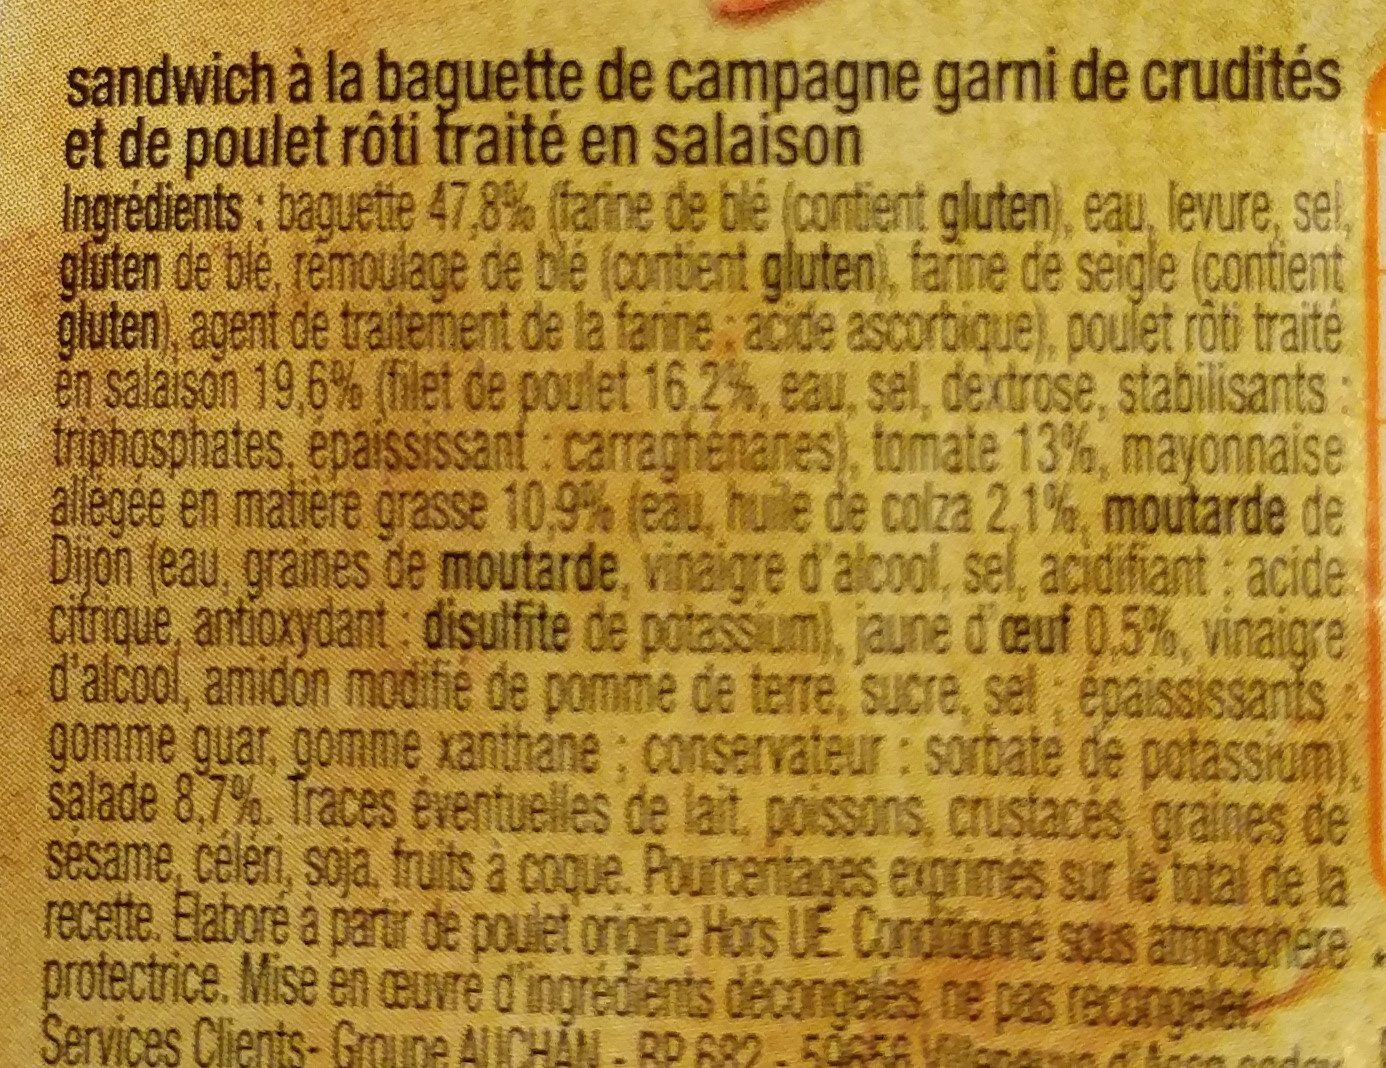 Pause snack - Sandwich Poulet Crudités baguette campagne - المكونات - fr